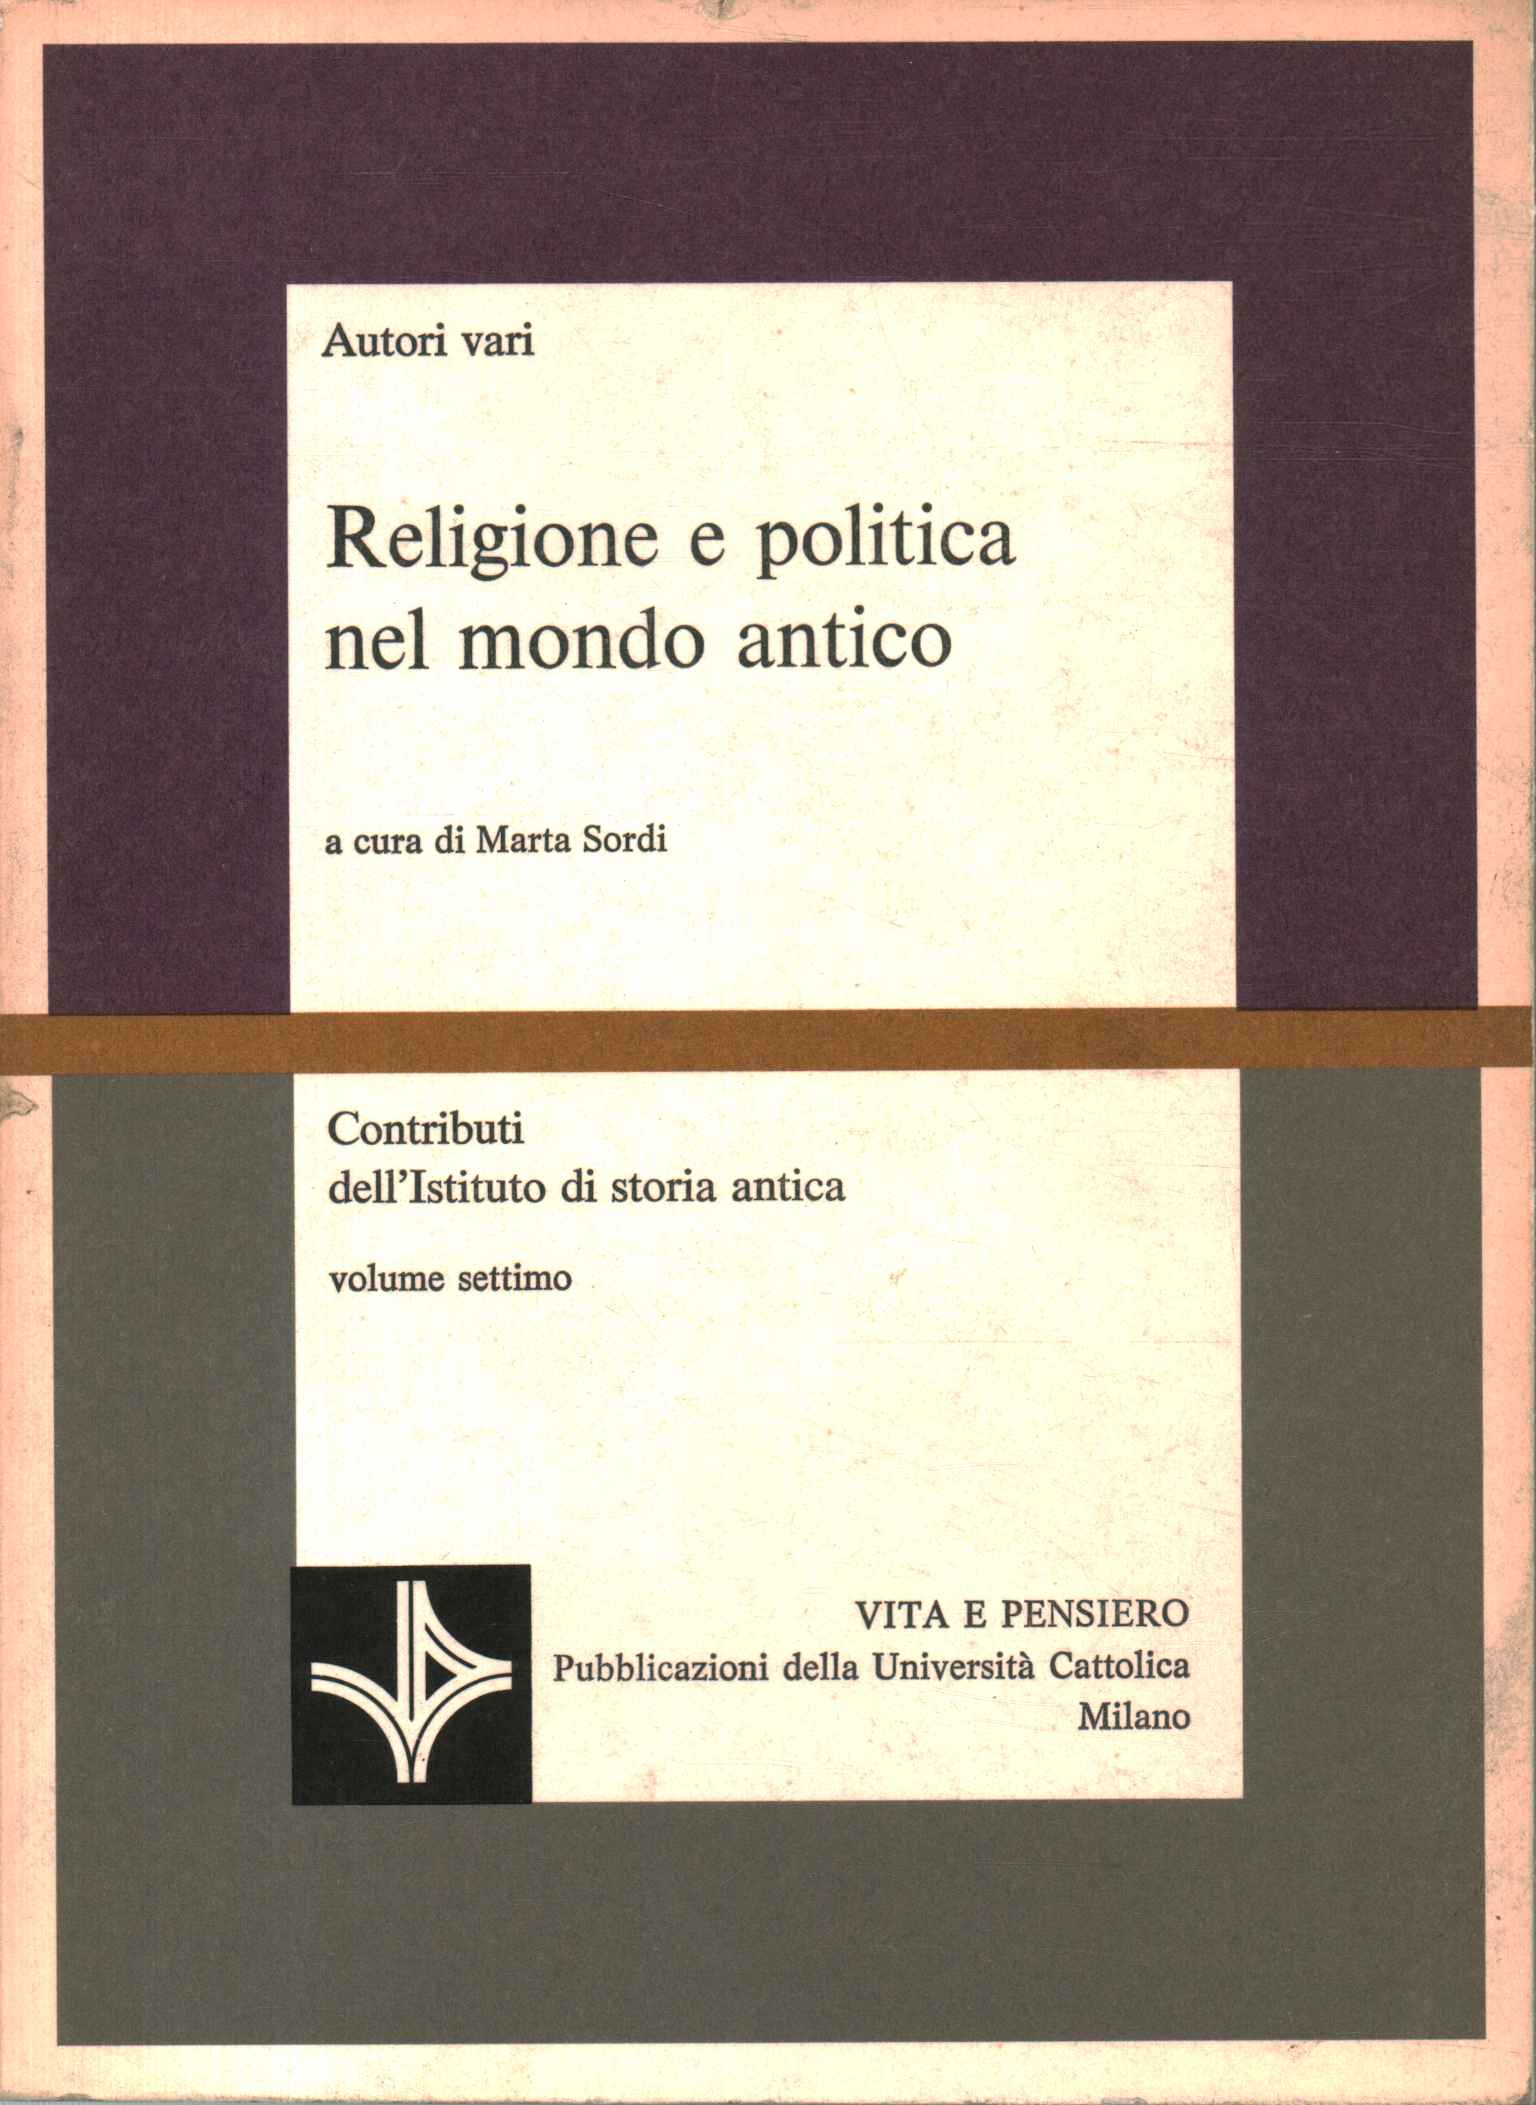 Religion und Politik in der Antike.%2,Religion und Politik in der Antike.%2,Religion und Politik in der Antike